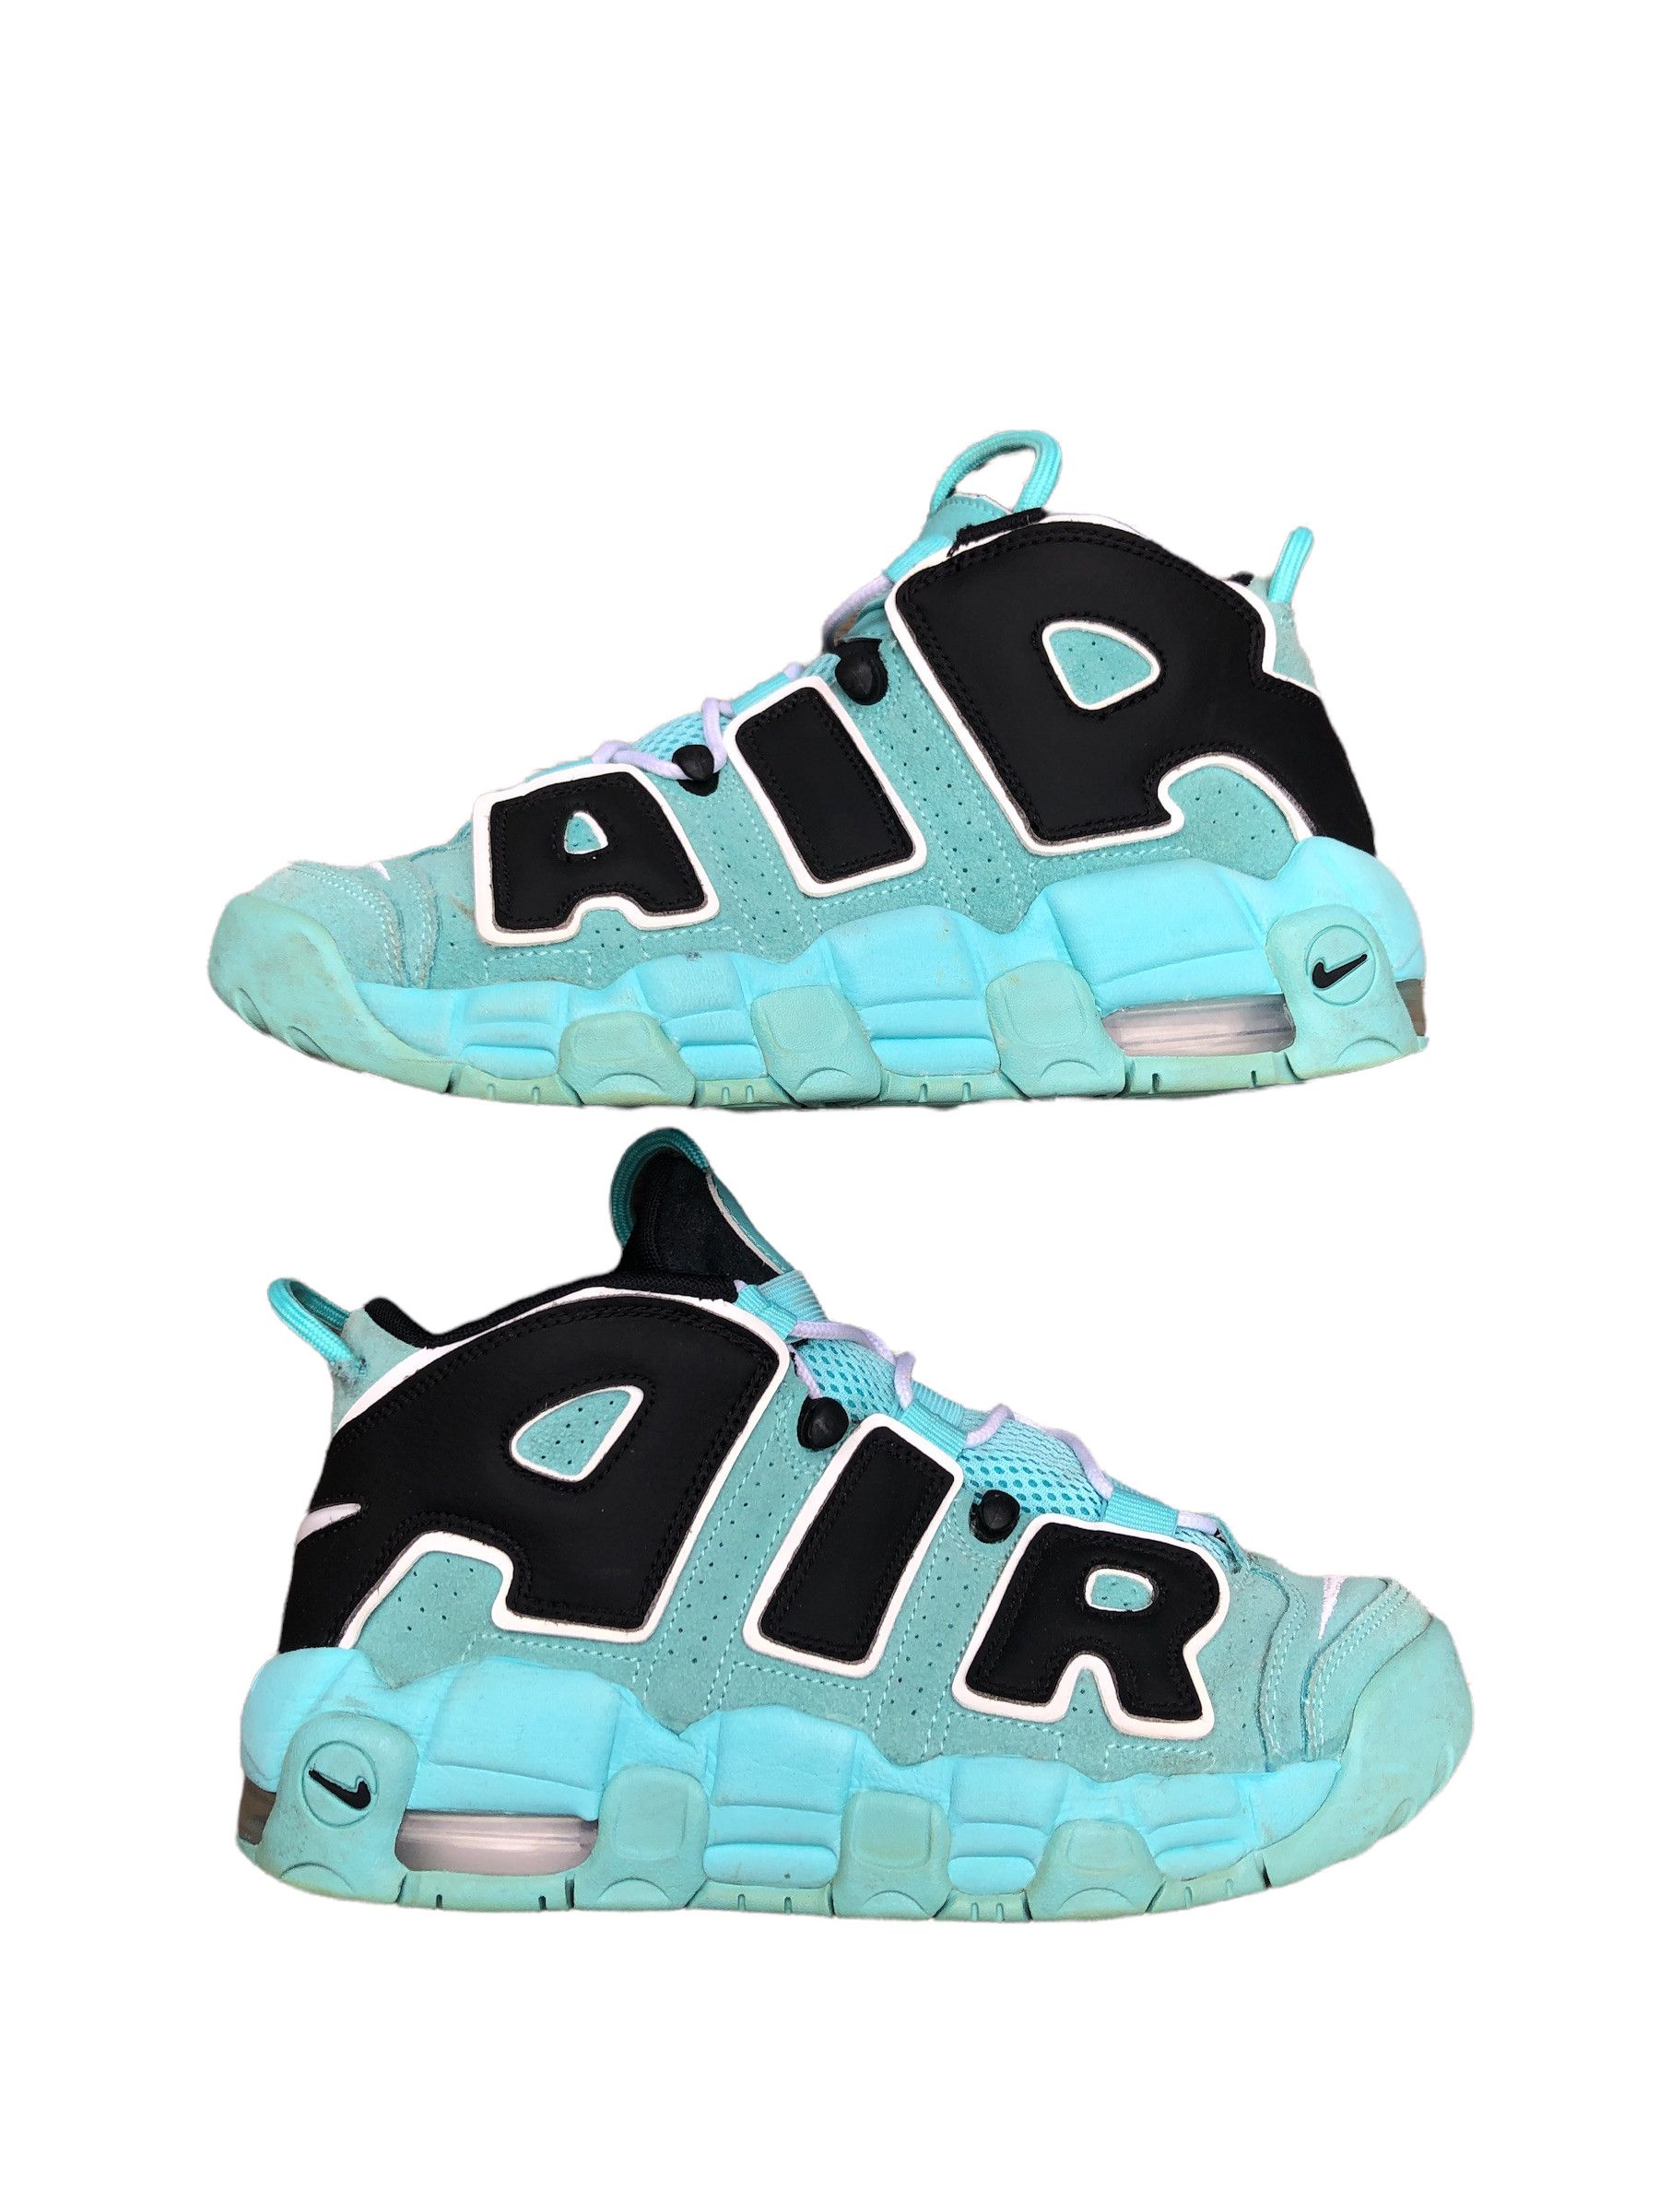 Nike RARE 2019 Nike Air More Uptempo Aqua Blue Size 7 | Grailed